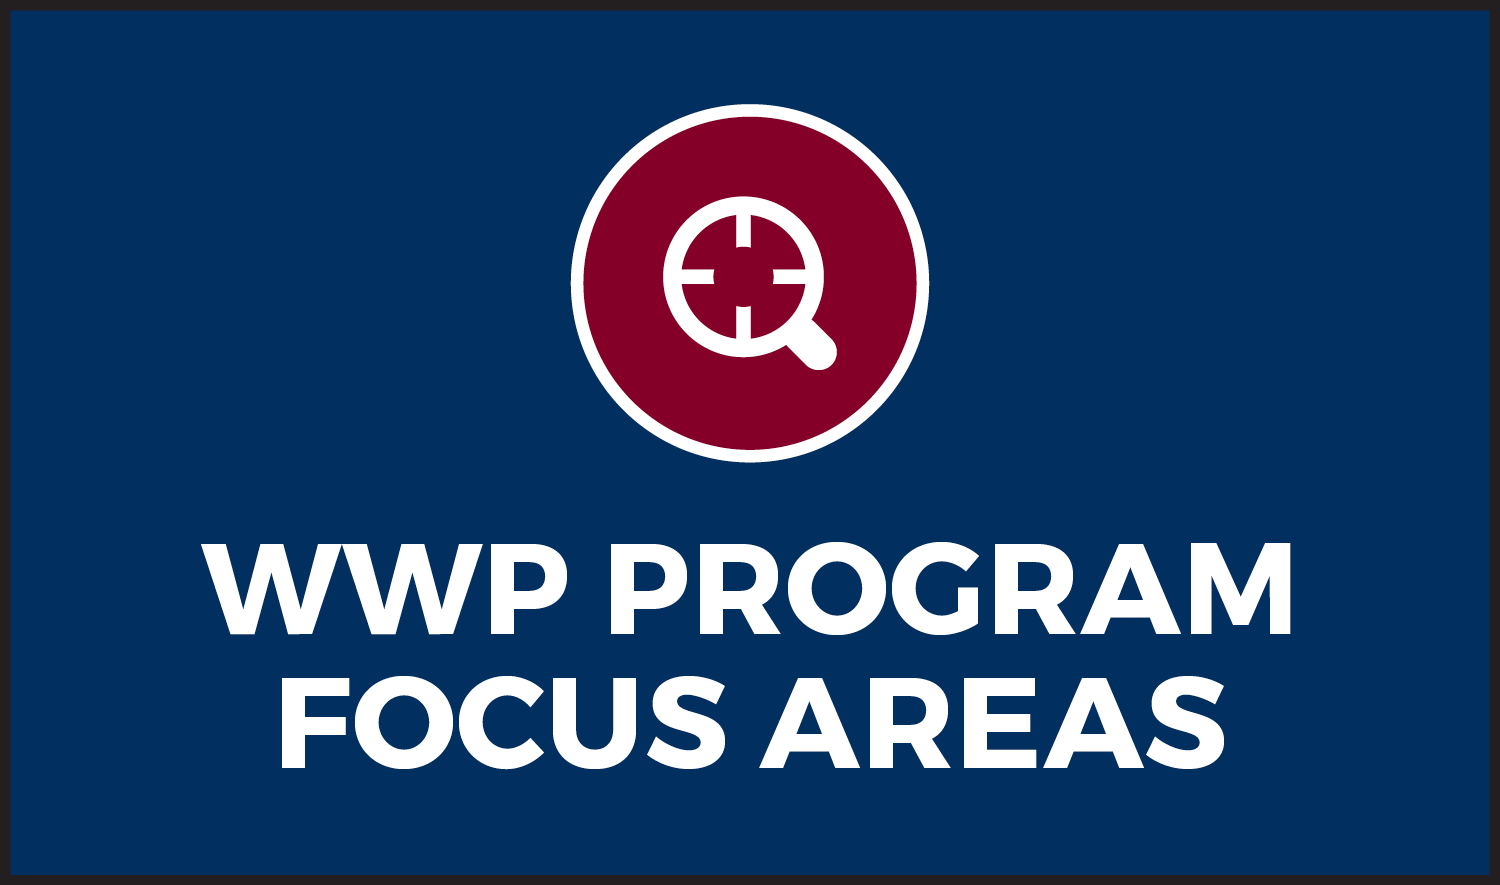 Áreas de enfoque del programa de WWP